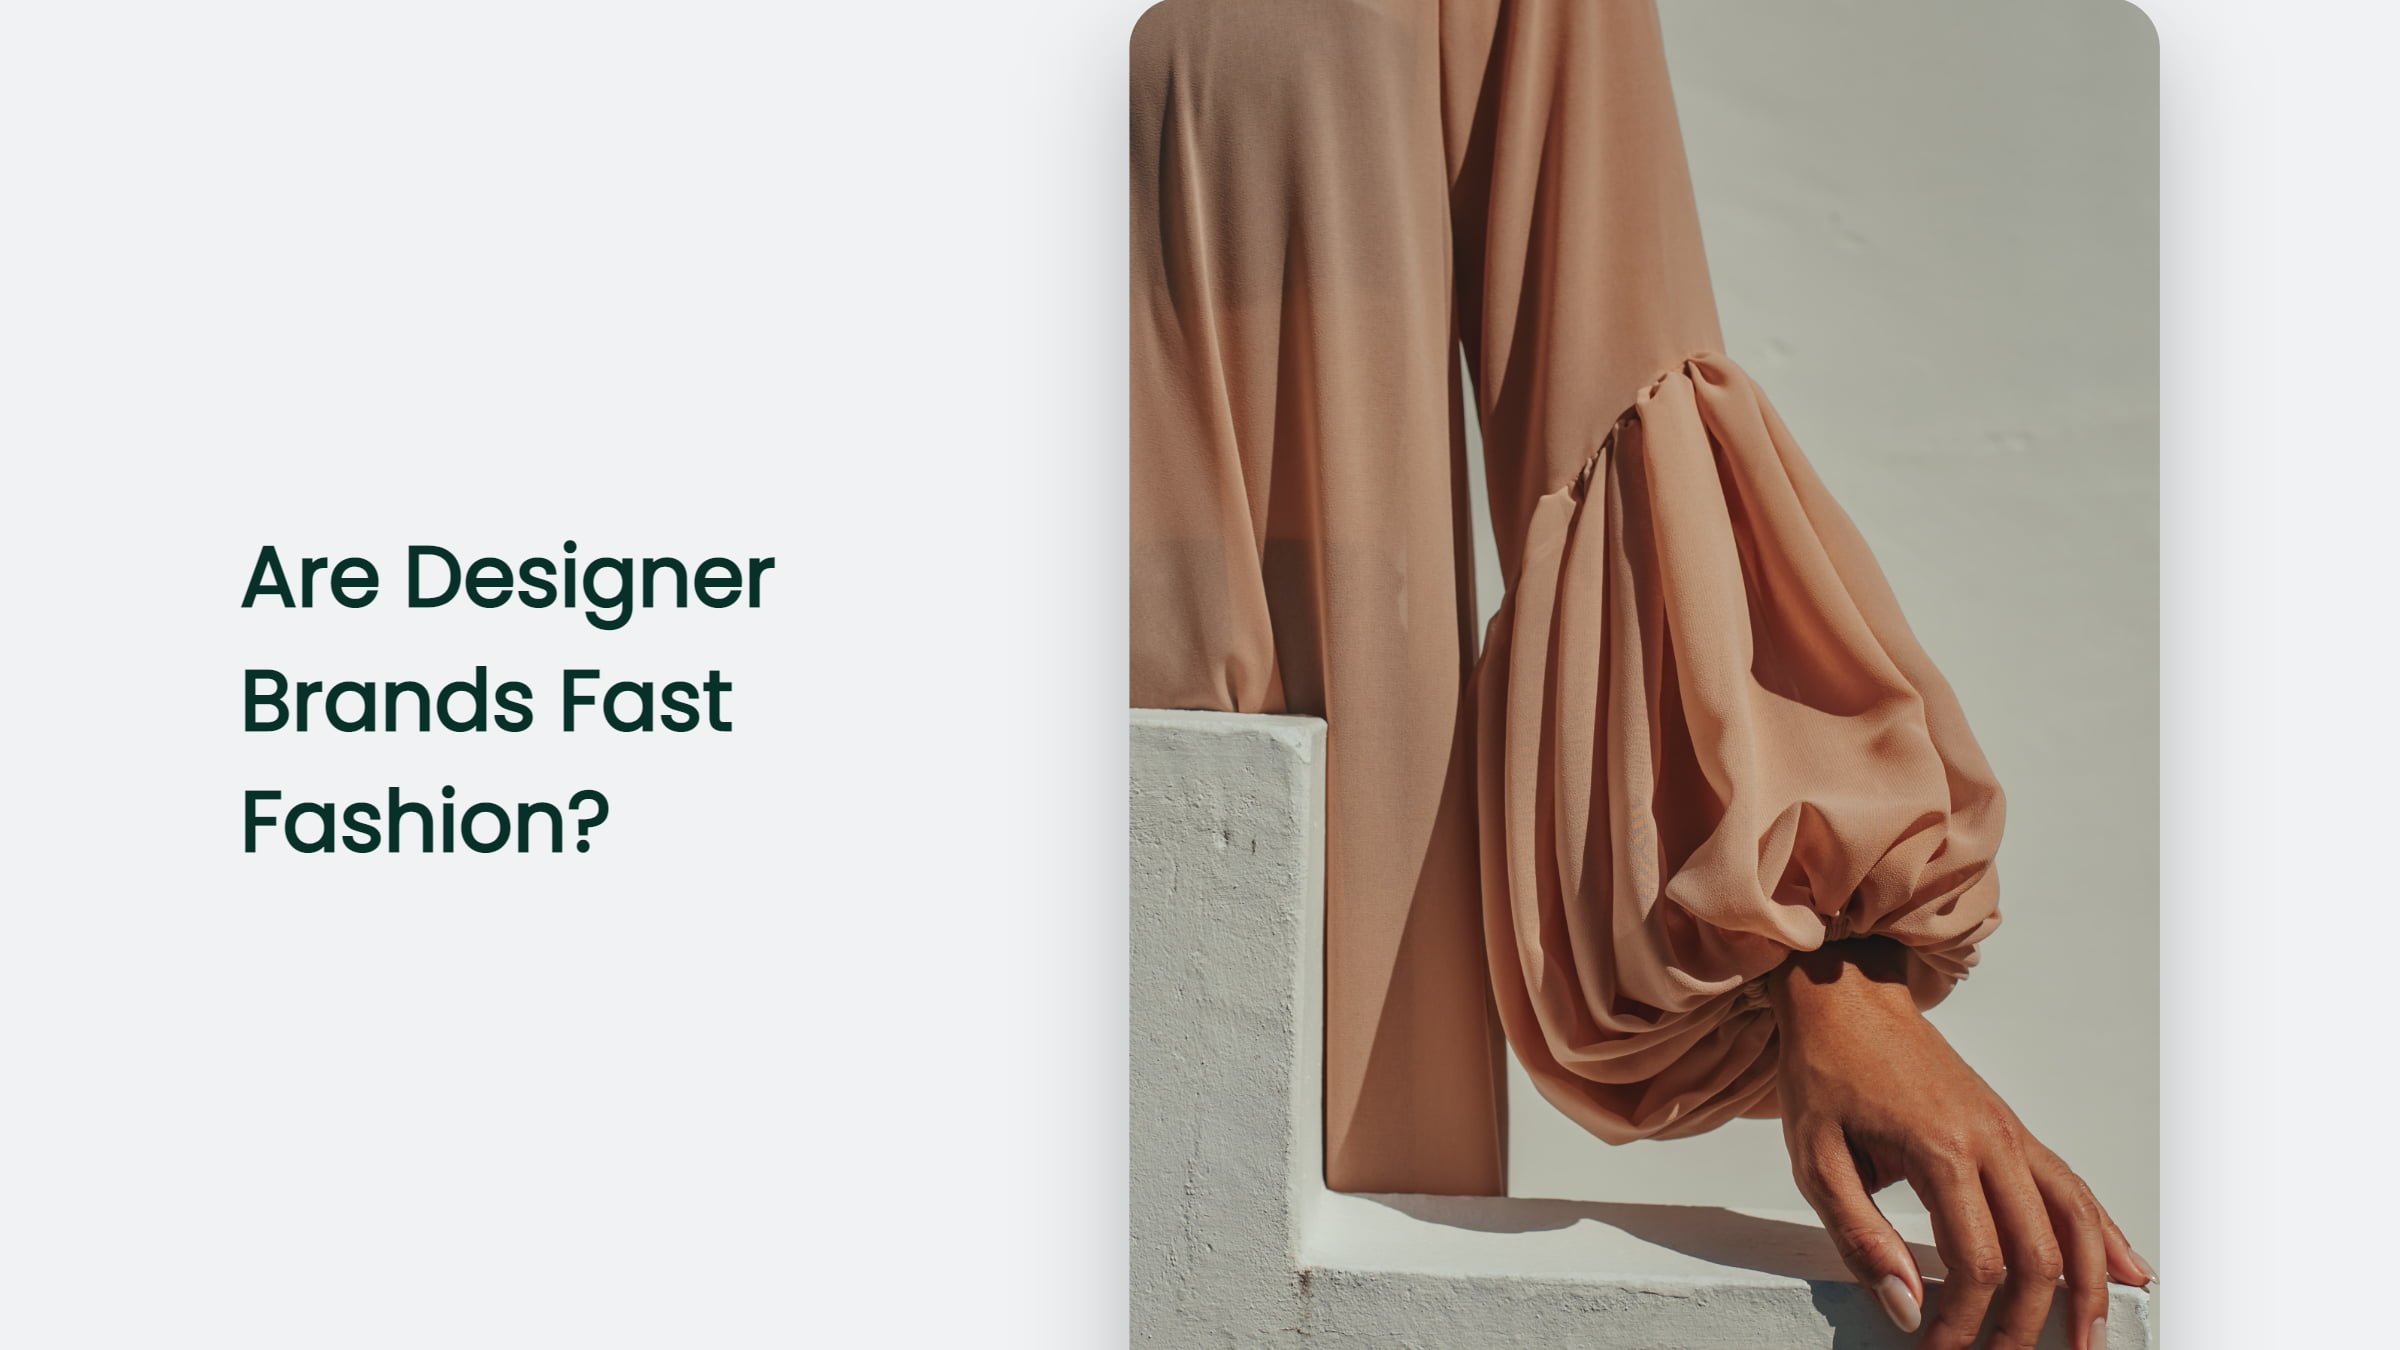 Are Designer Brands Fast Fashion?